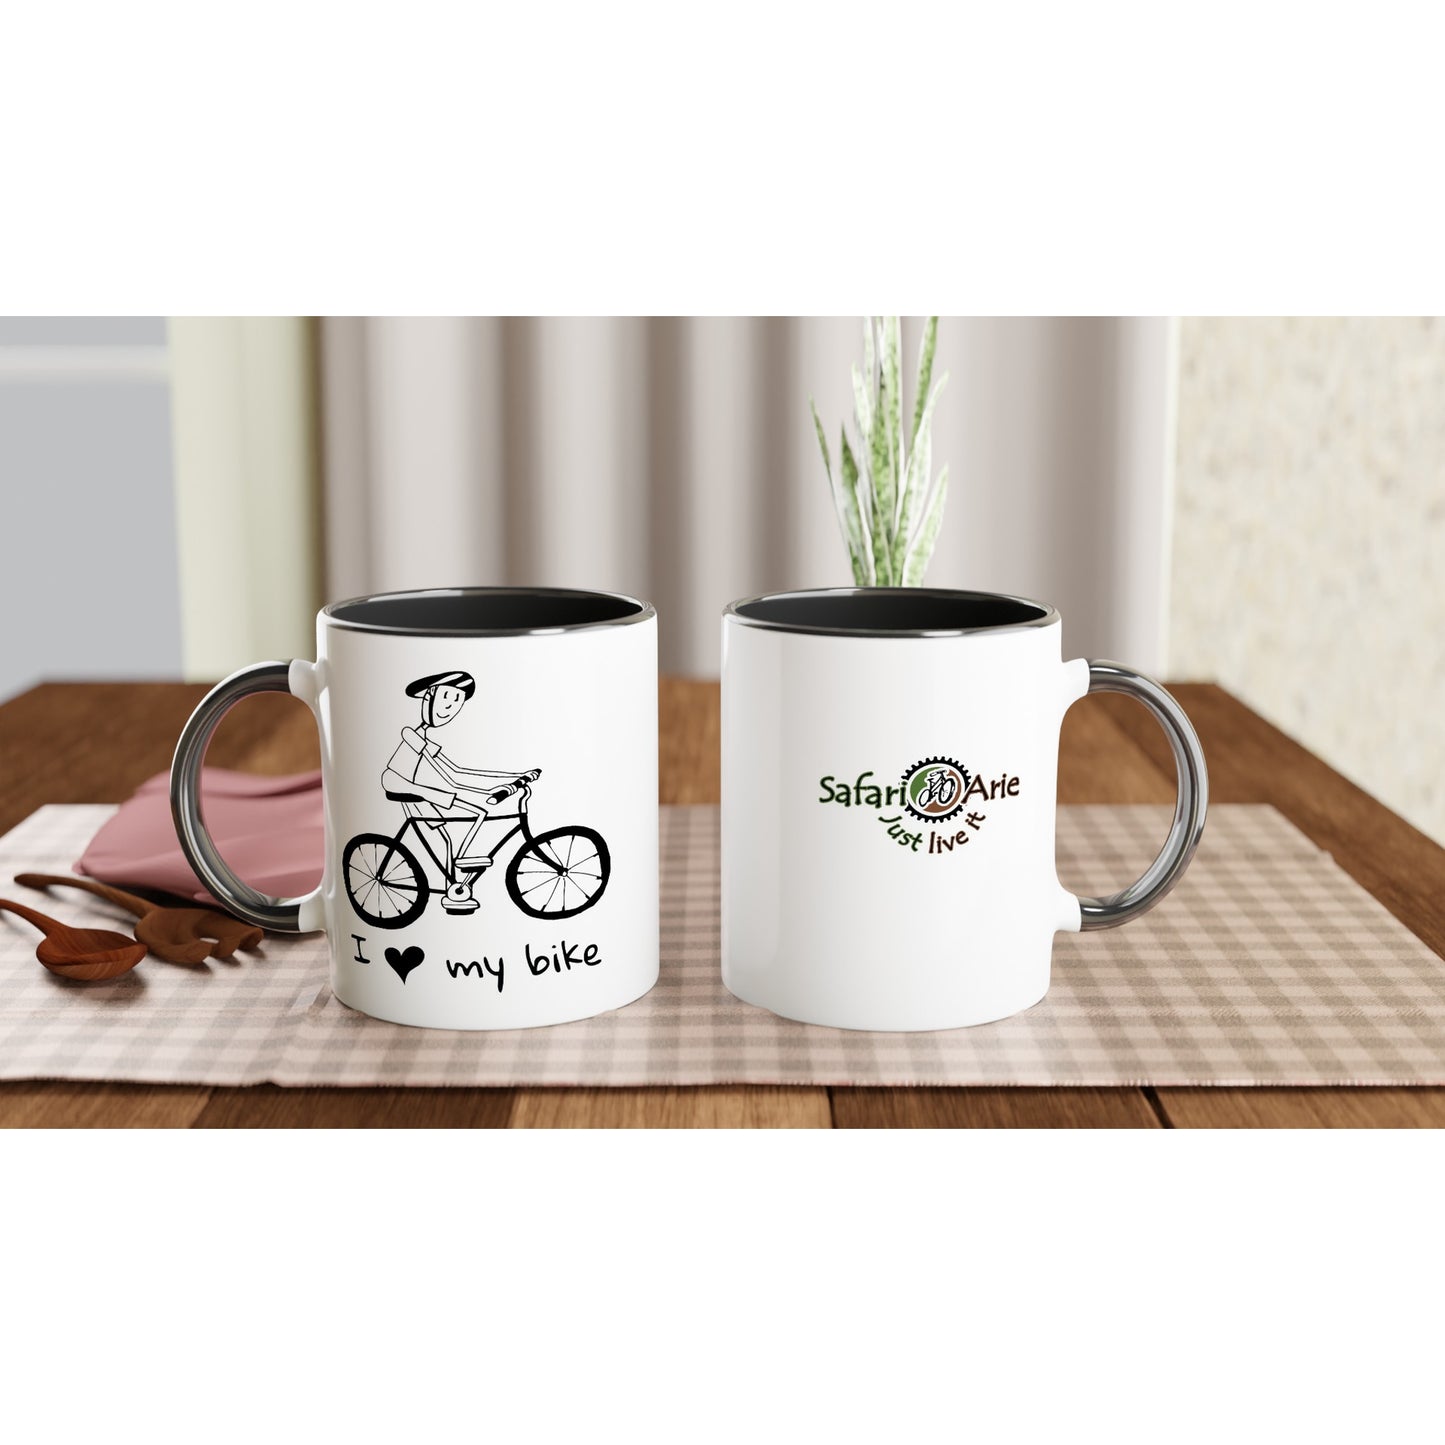 I love my bike ceramic mug - mens